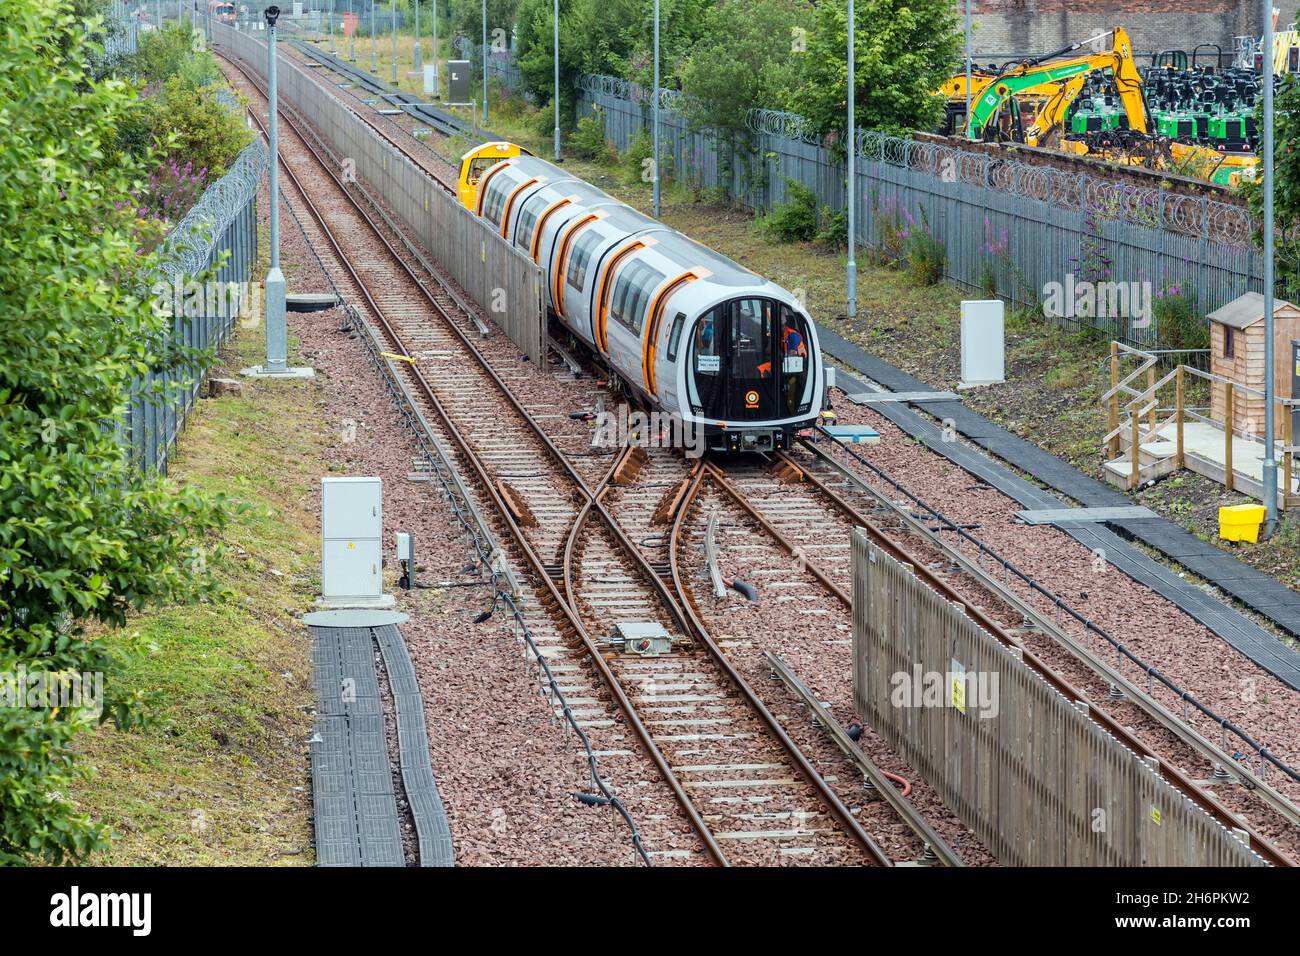 Glasgow Subway / Underground Trains, die Tests auf Außenbahnen durchlaufen, Glasgow, Schottland, Großbritannien Stockfoto